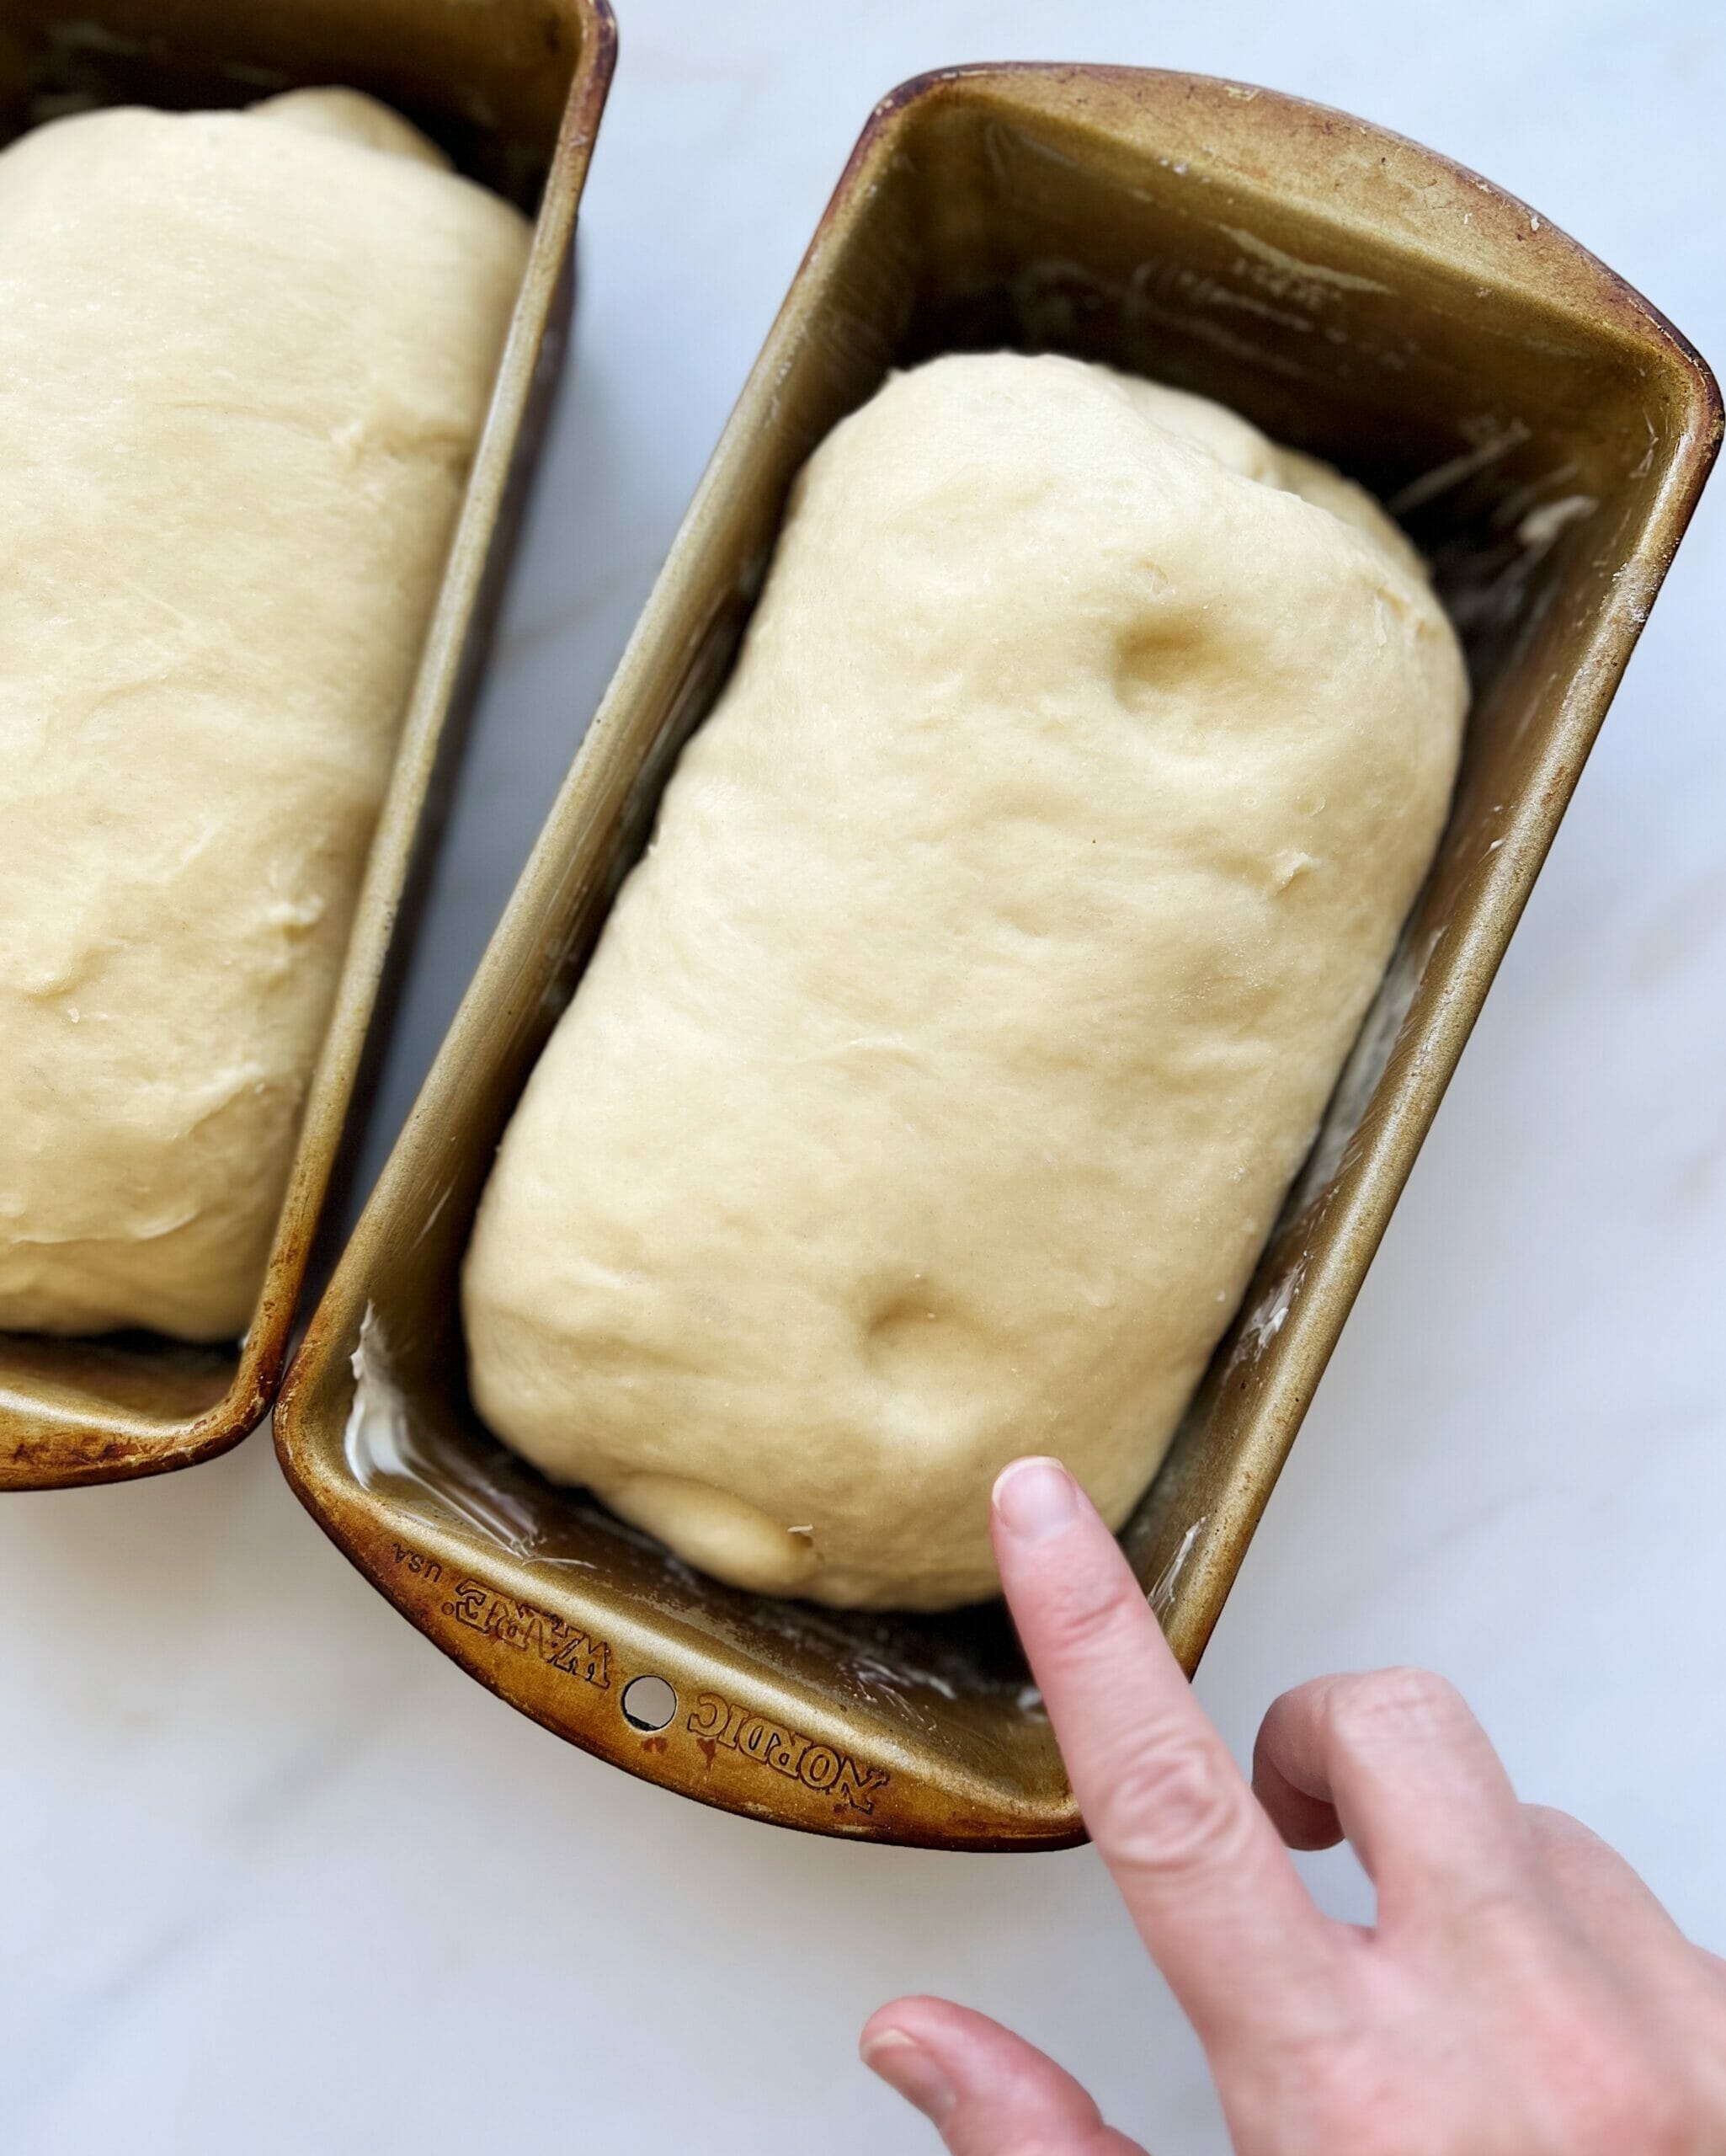 Finger indention on loaf of bread.